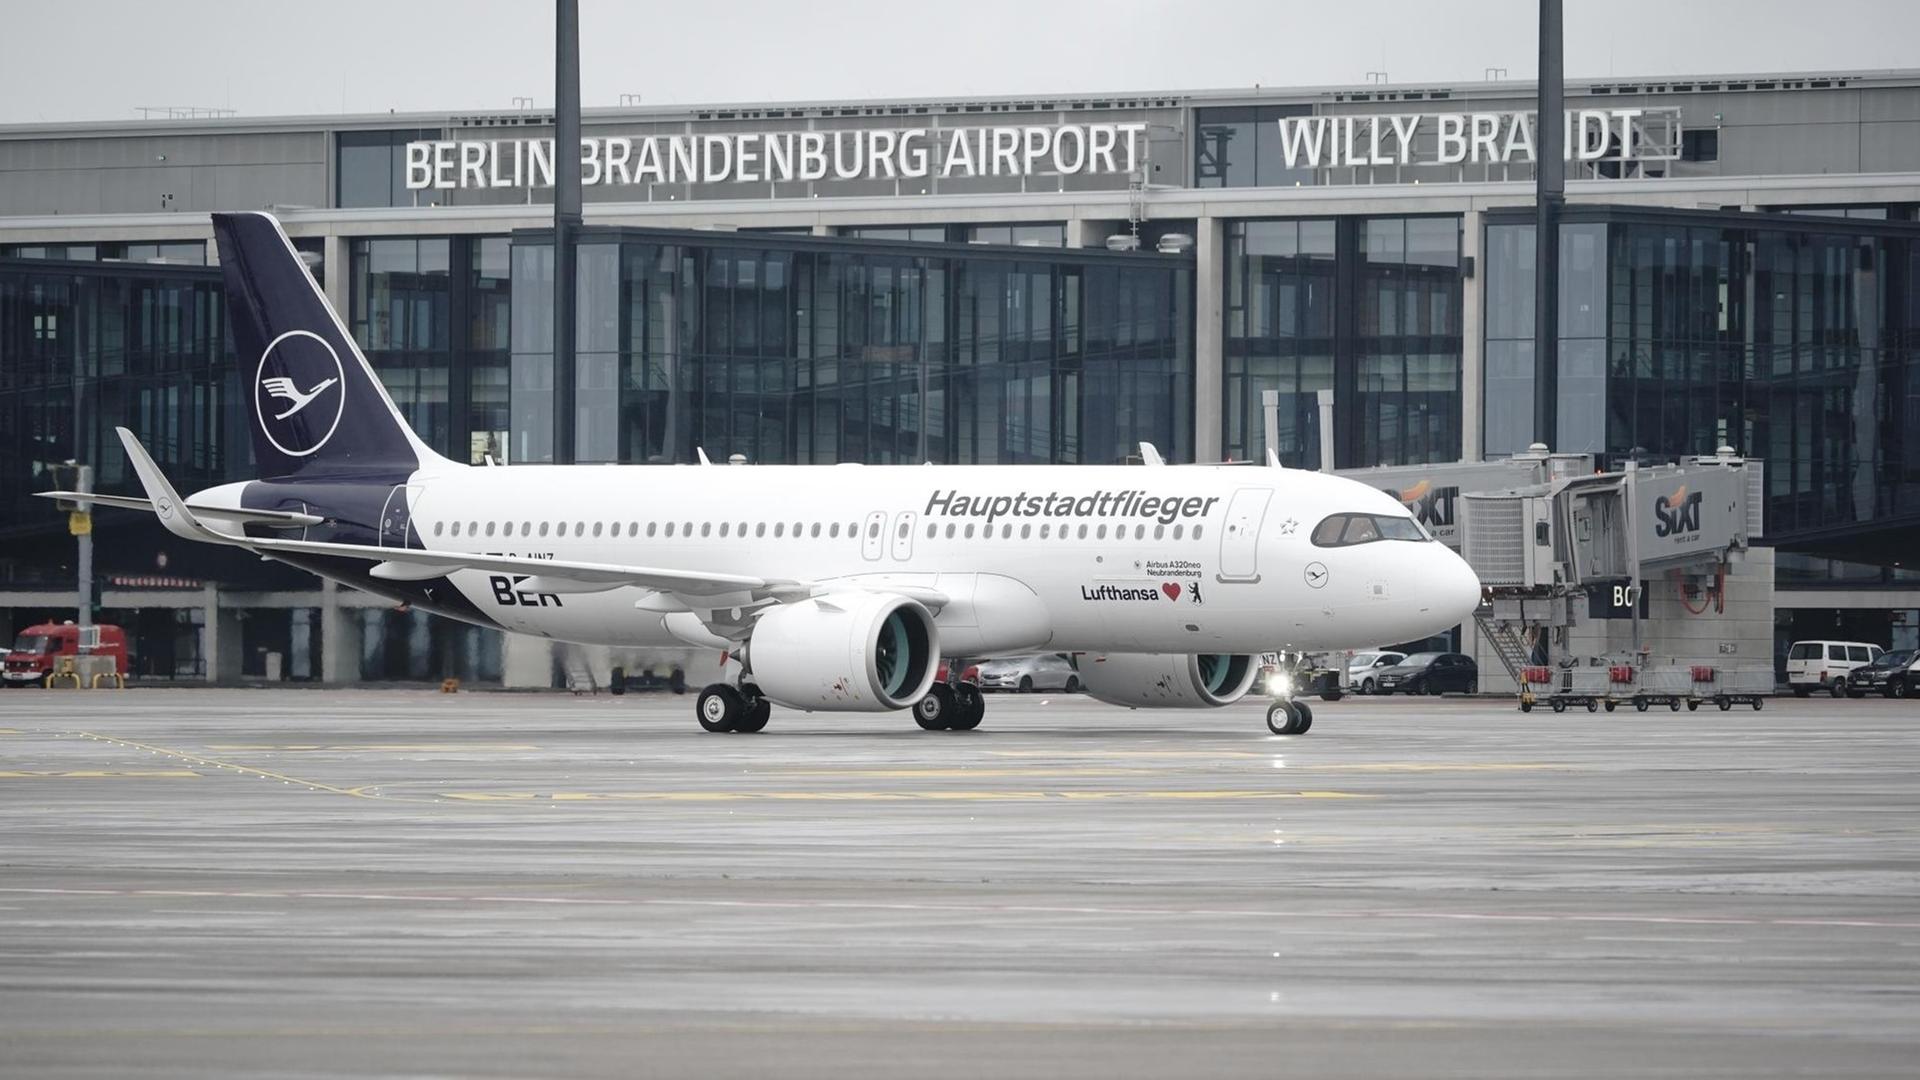 Ein Airbus der Lufthansa mit der Aufschrift "Hauptstadtflieger" steht nach der Landung vor dem Terminal 1 des Hauptstadtflughafens Berlin Brandenburg "Willy Brandt".